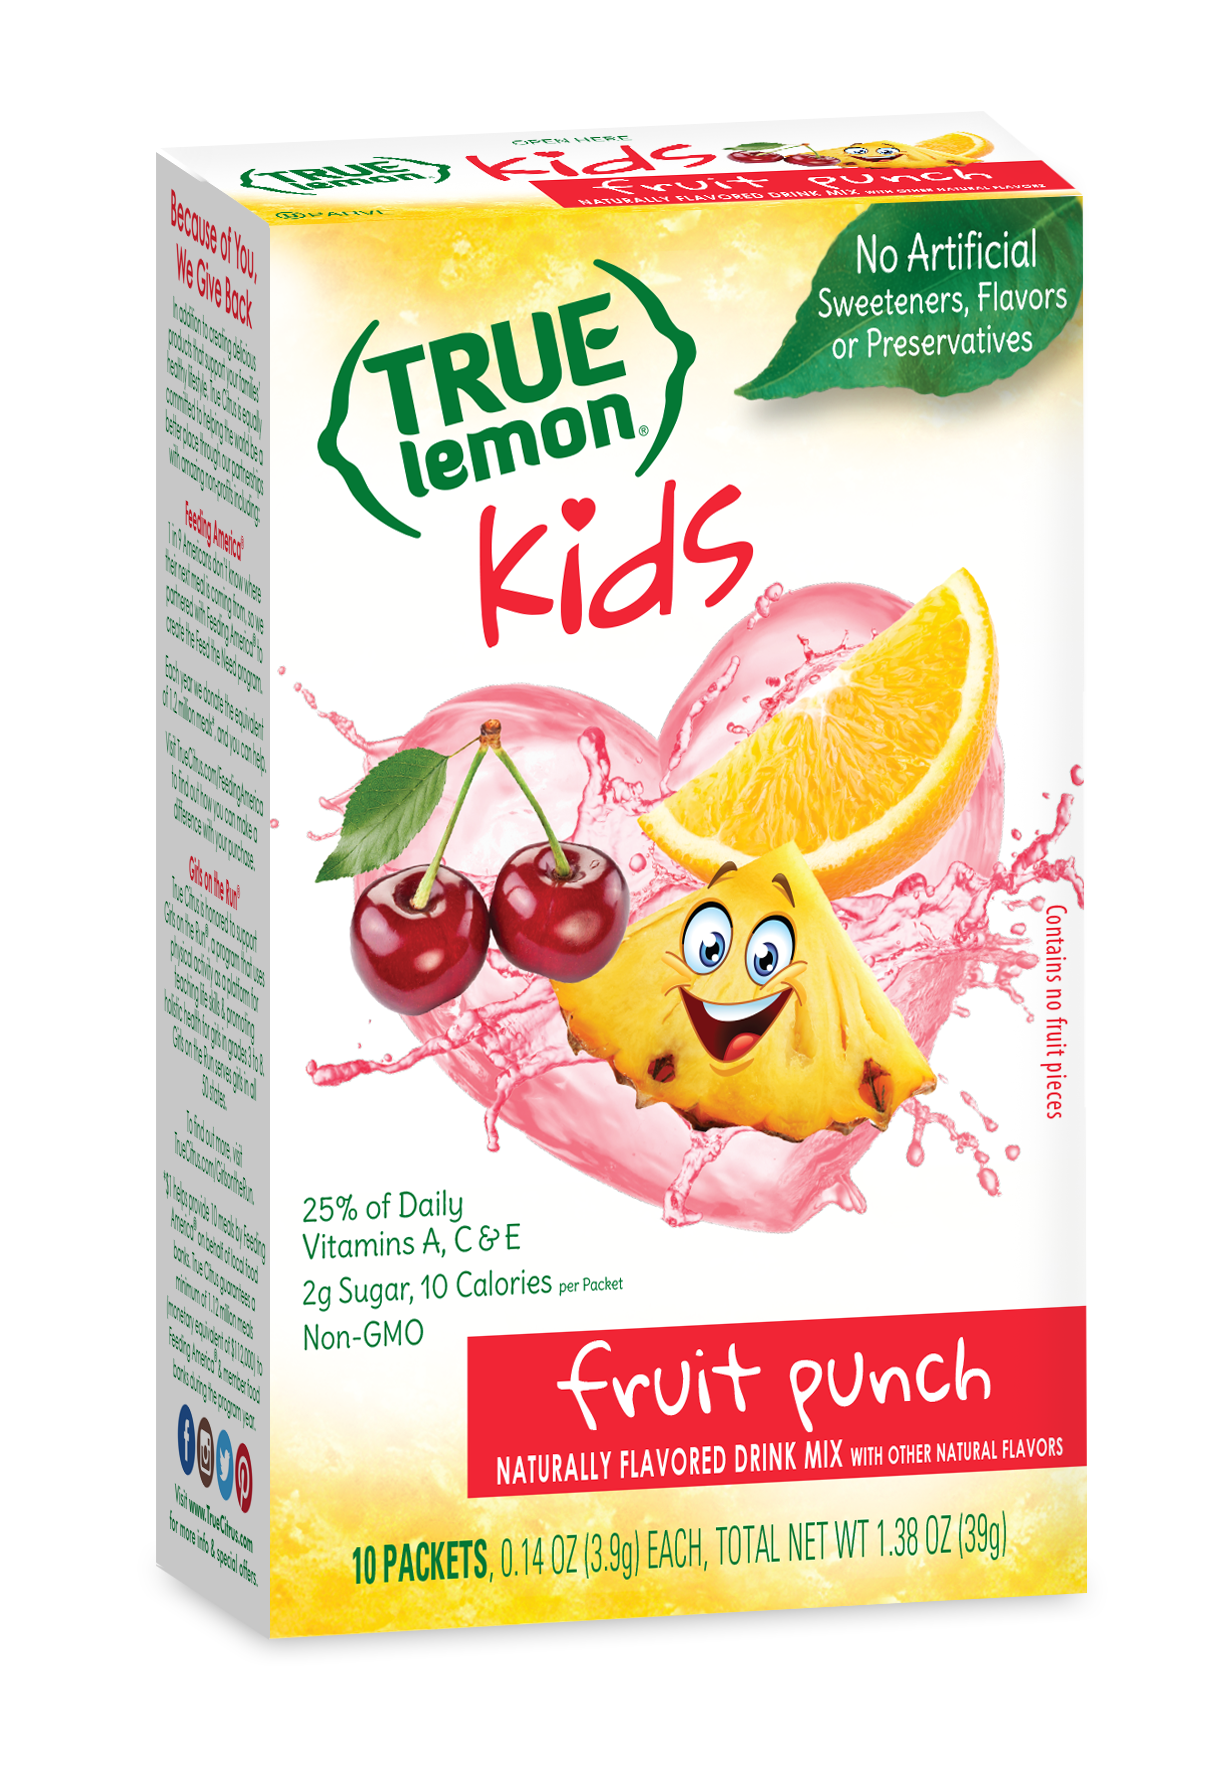 True Lemon Kids Fruit Punch 12 units per case 0.1 oz